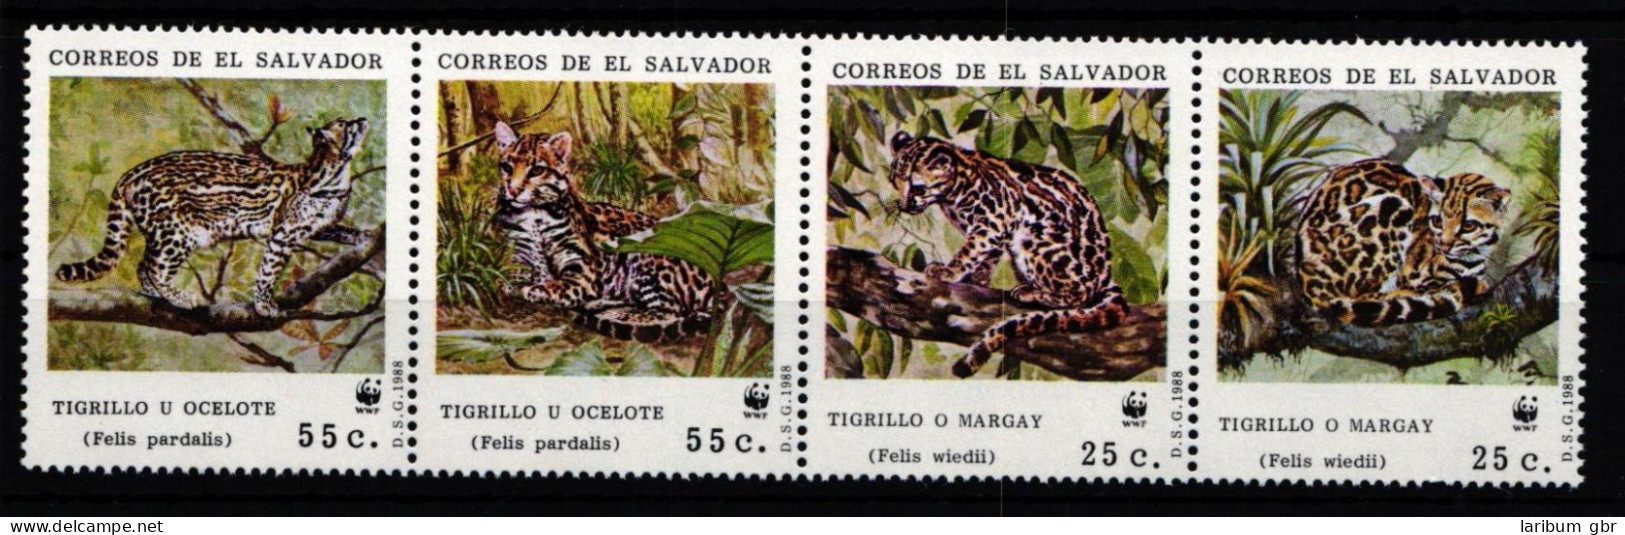 El Salvador 1734-1737 Postfrisch Viererstreifen / Wildtiere #IH428 - El Salvador